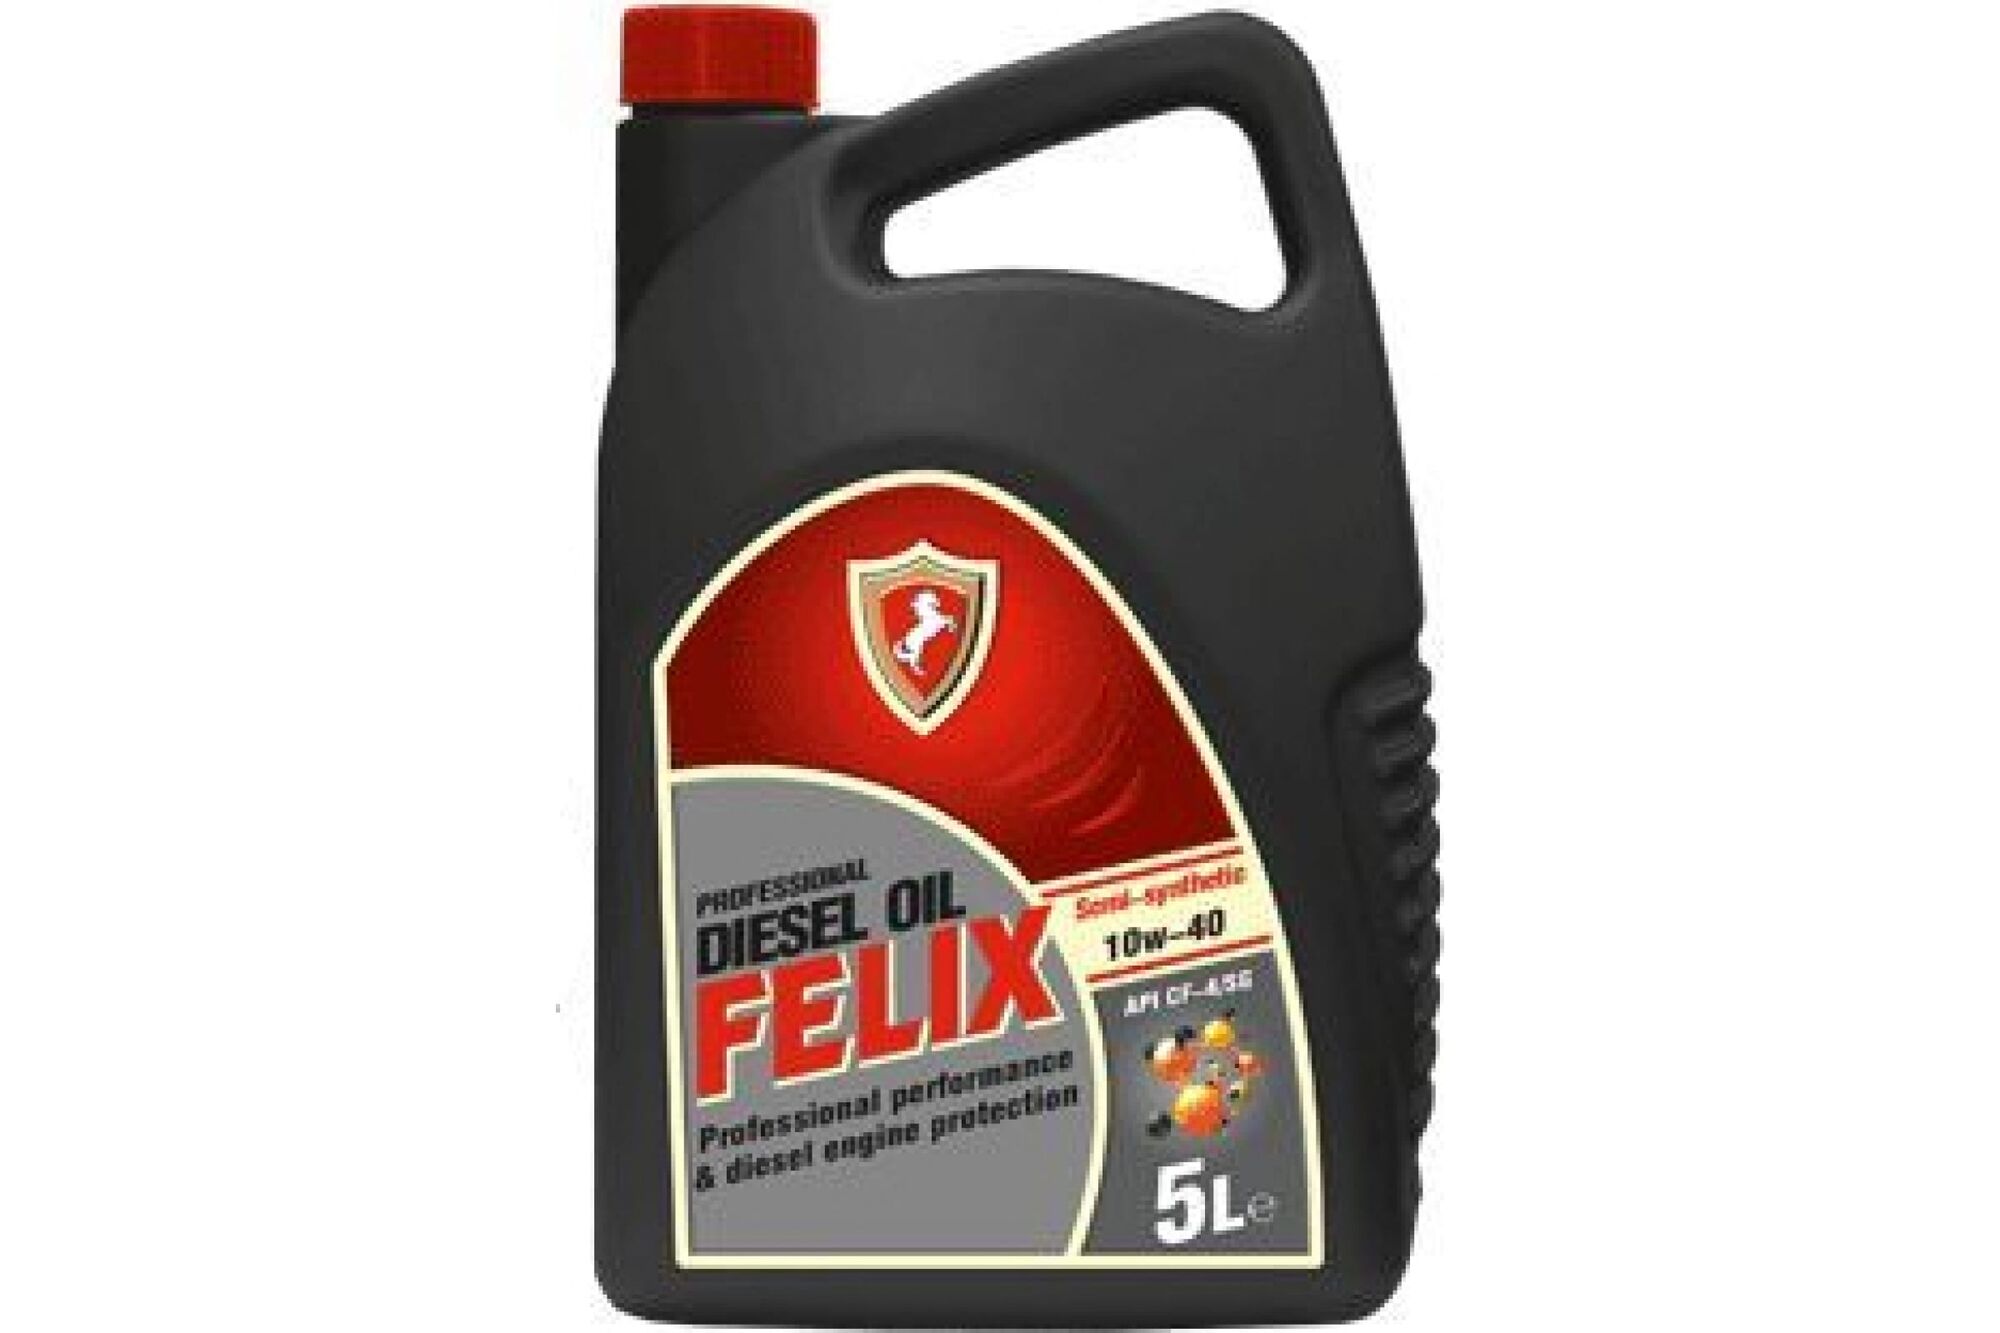 Моторное масло FELIX 10W-40, CF-4/SG, 5 л, дизель 430900025 Felix